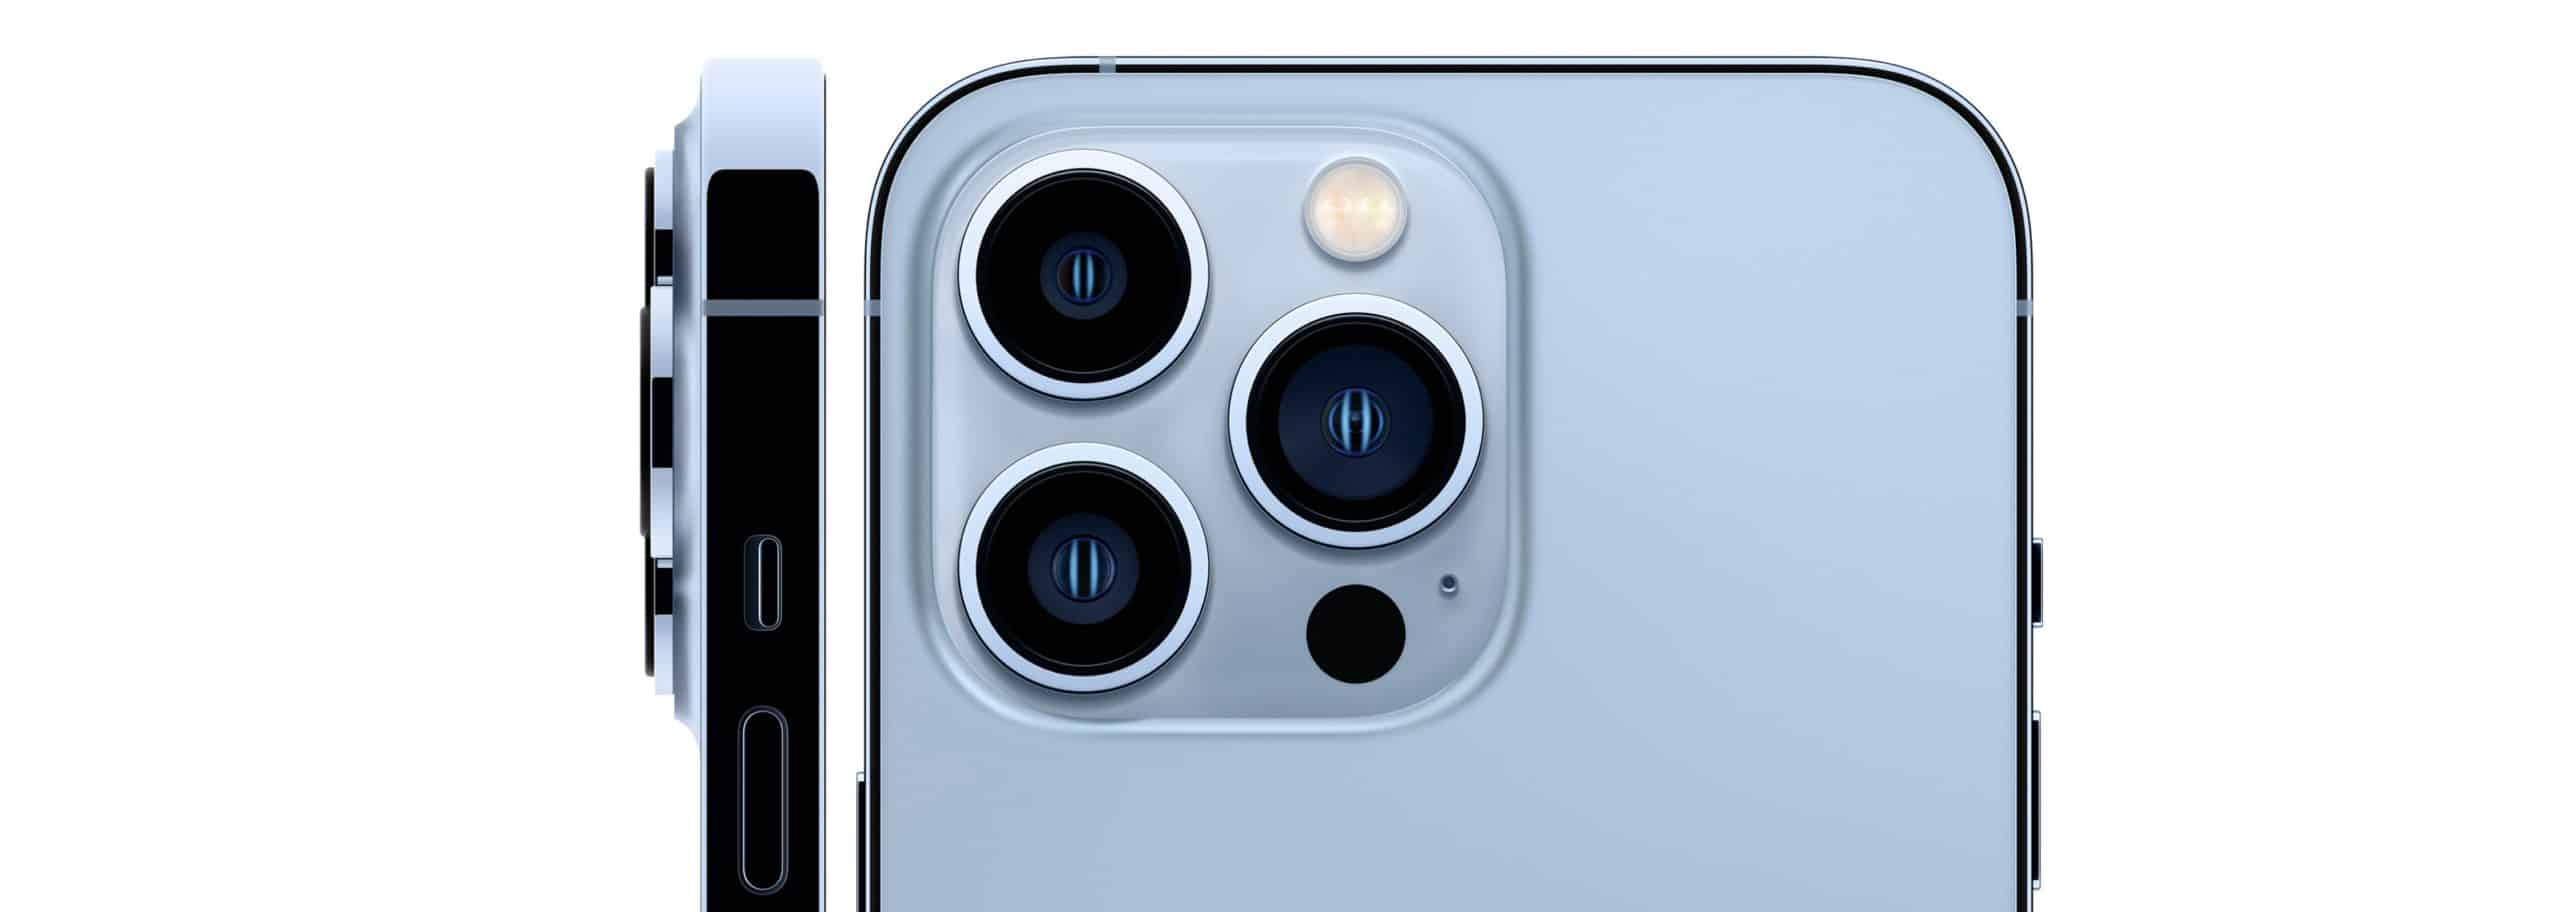 iphone 13 pro scaled - Apple iPhone 13: modelli prezzi e caratteristiche a confronto